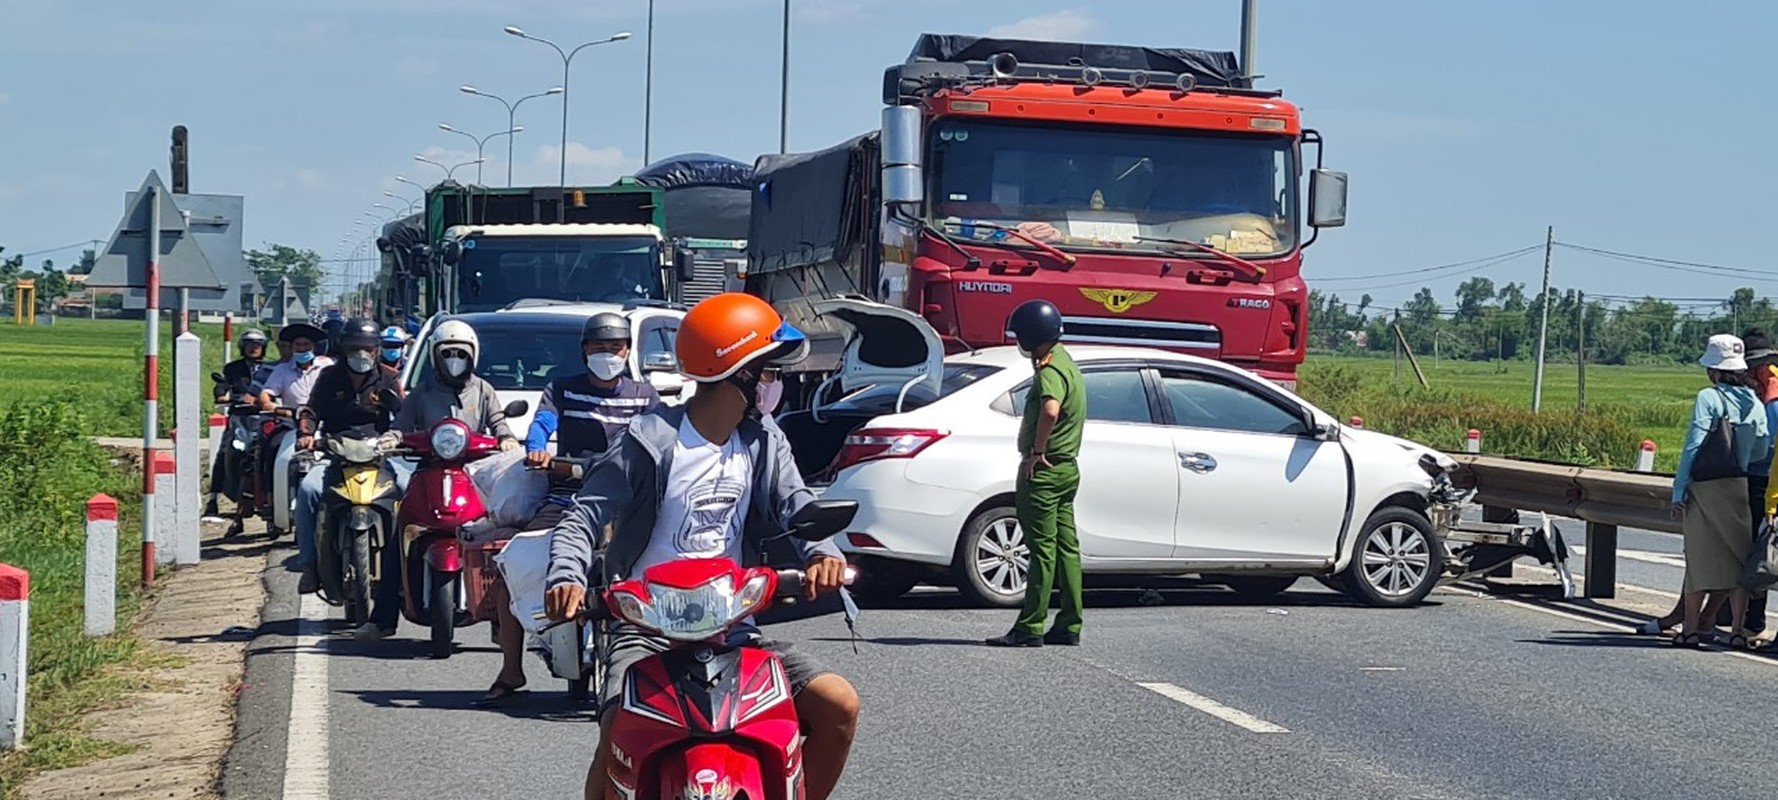 Quảng Nam: Liên tiếp xảy ra các vụ va chạm giao thông